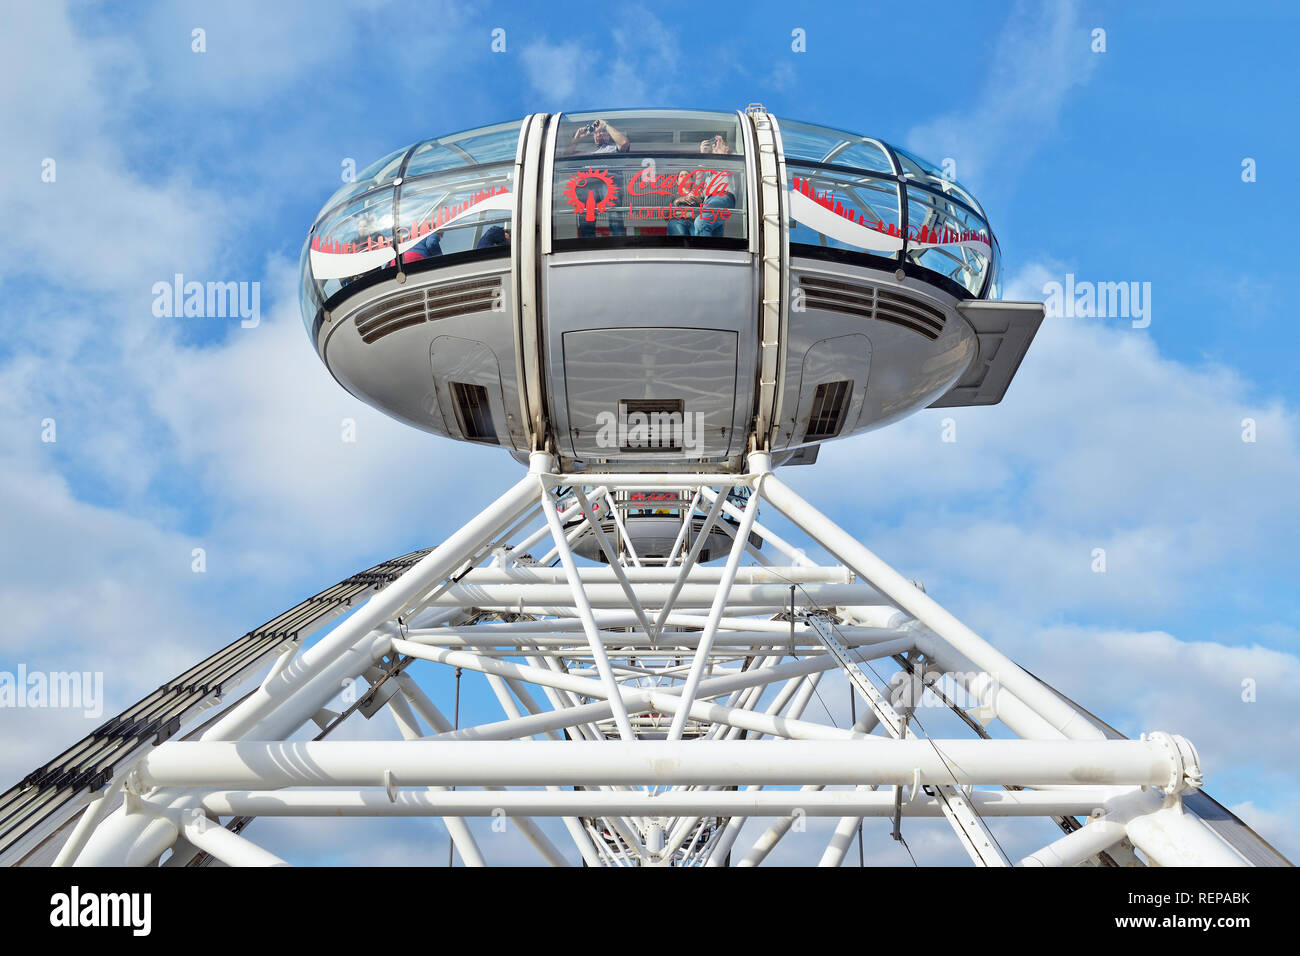 Capsule sur le London Eye, Londres, Angleterre, Royaume-Uni Banque D'Images